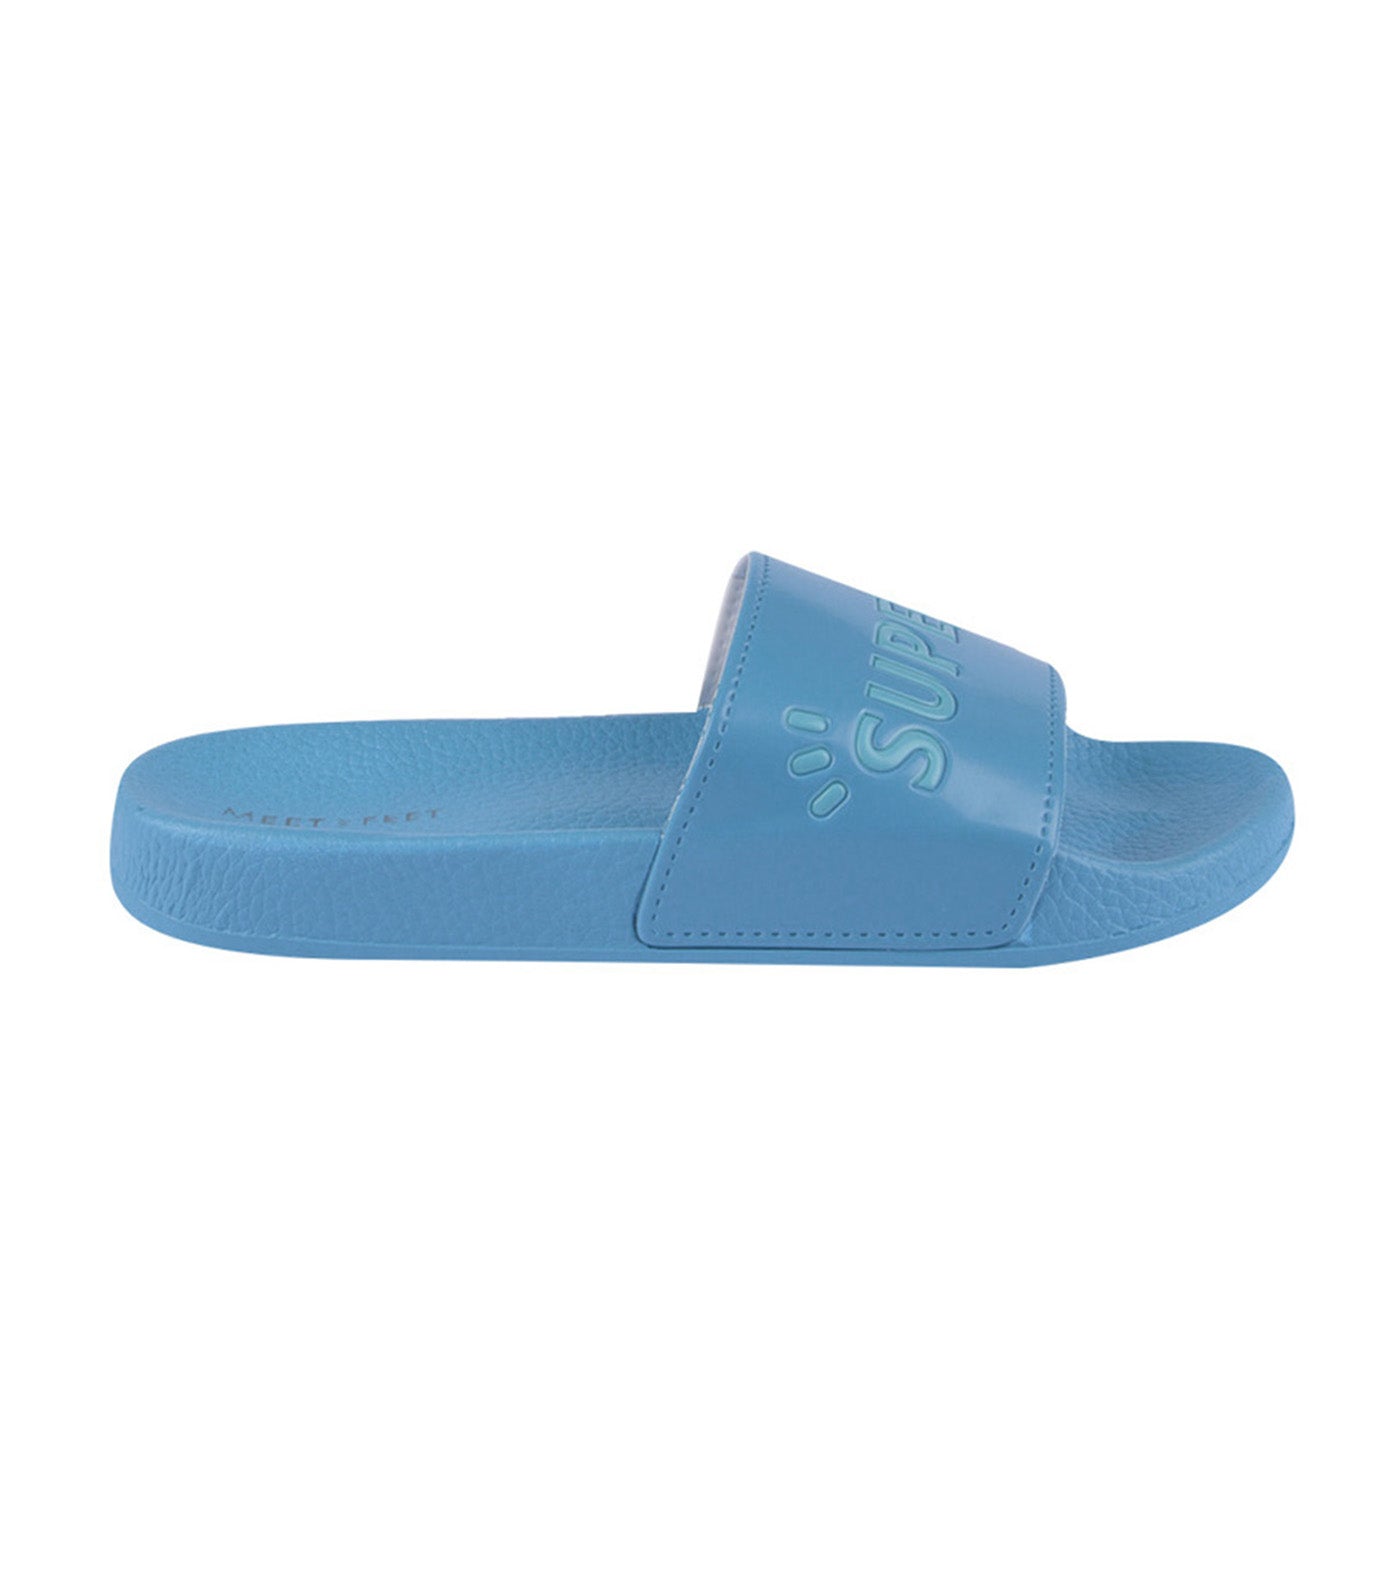 meet my feet blue superb slippers